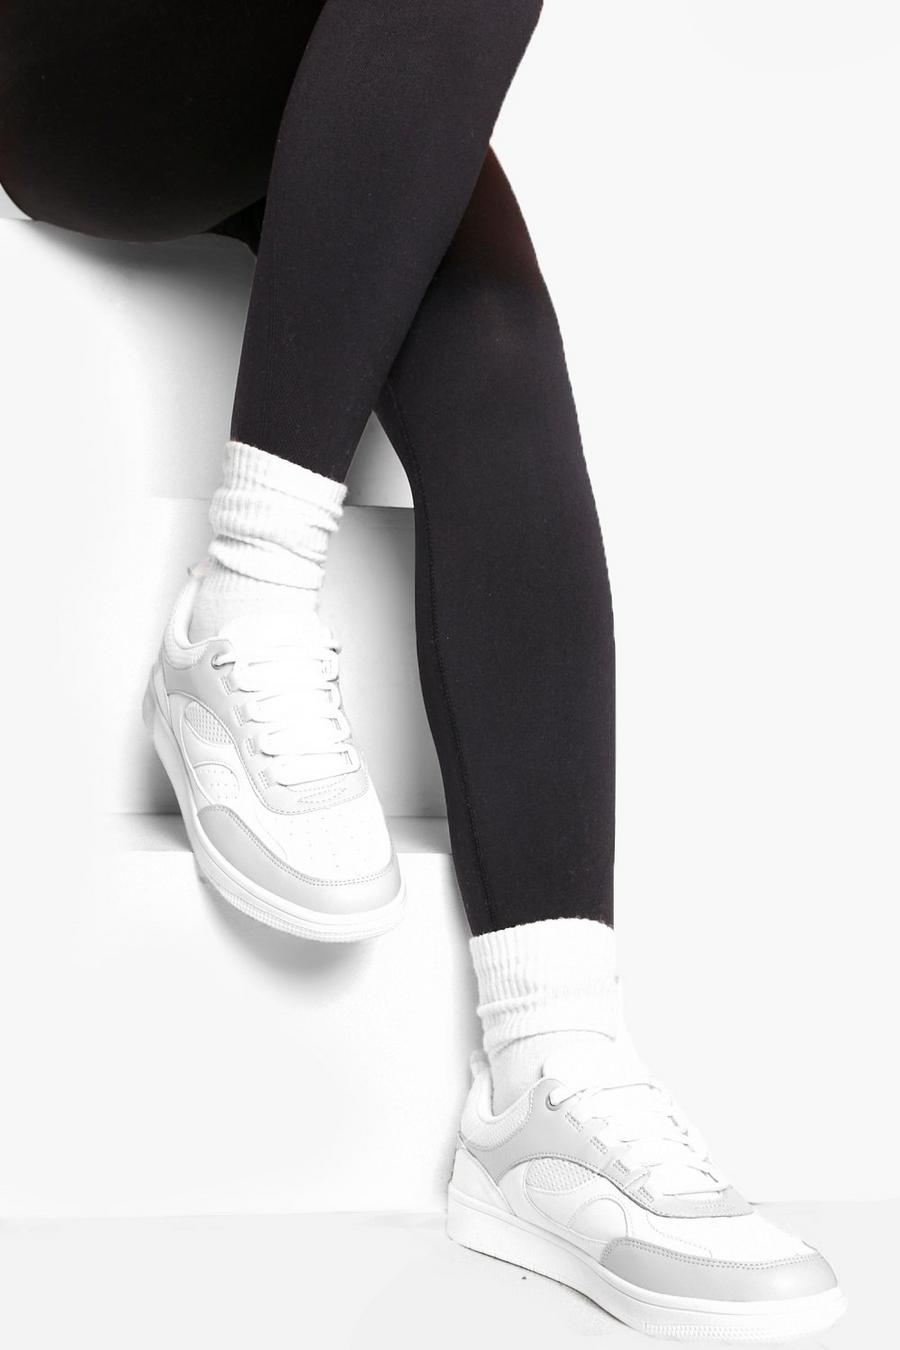 אפור grigio נעלי ספורט עם חלק עליון נמוך ופאנל בד רשת בצבעים מנוגדים